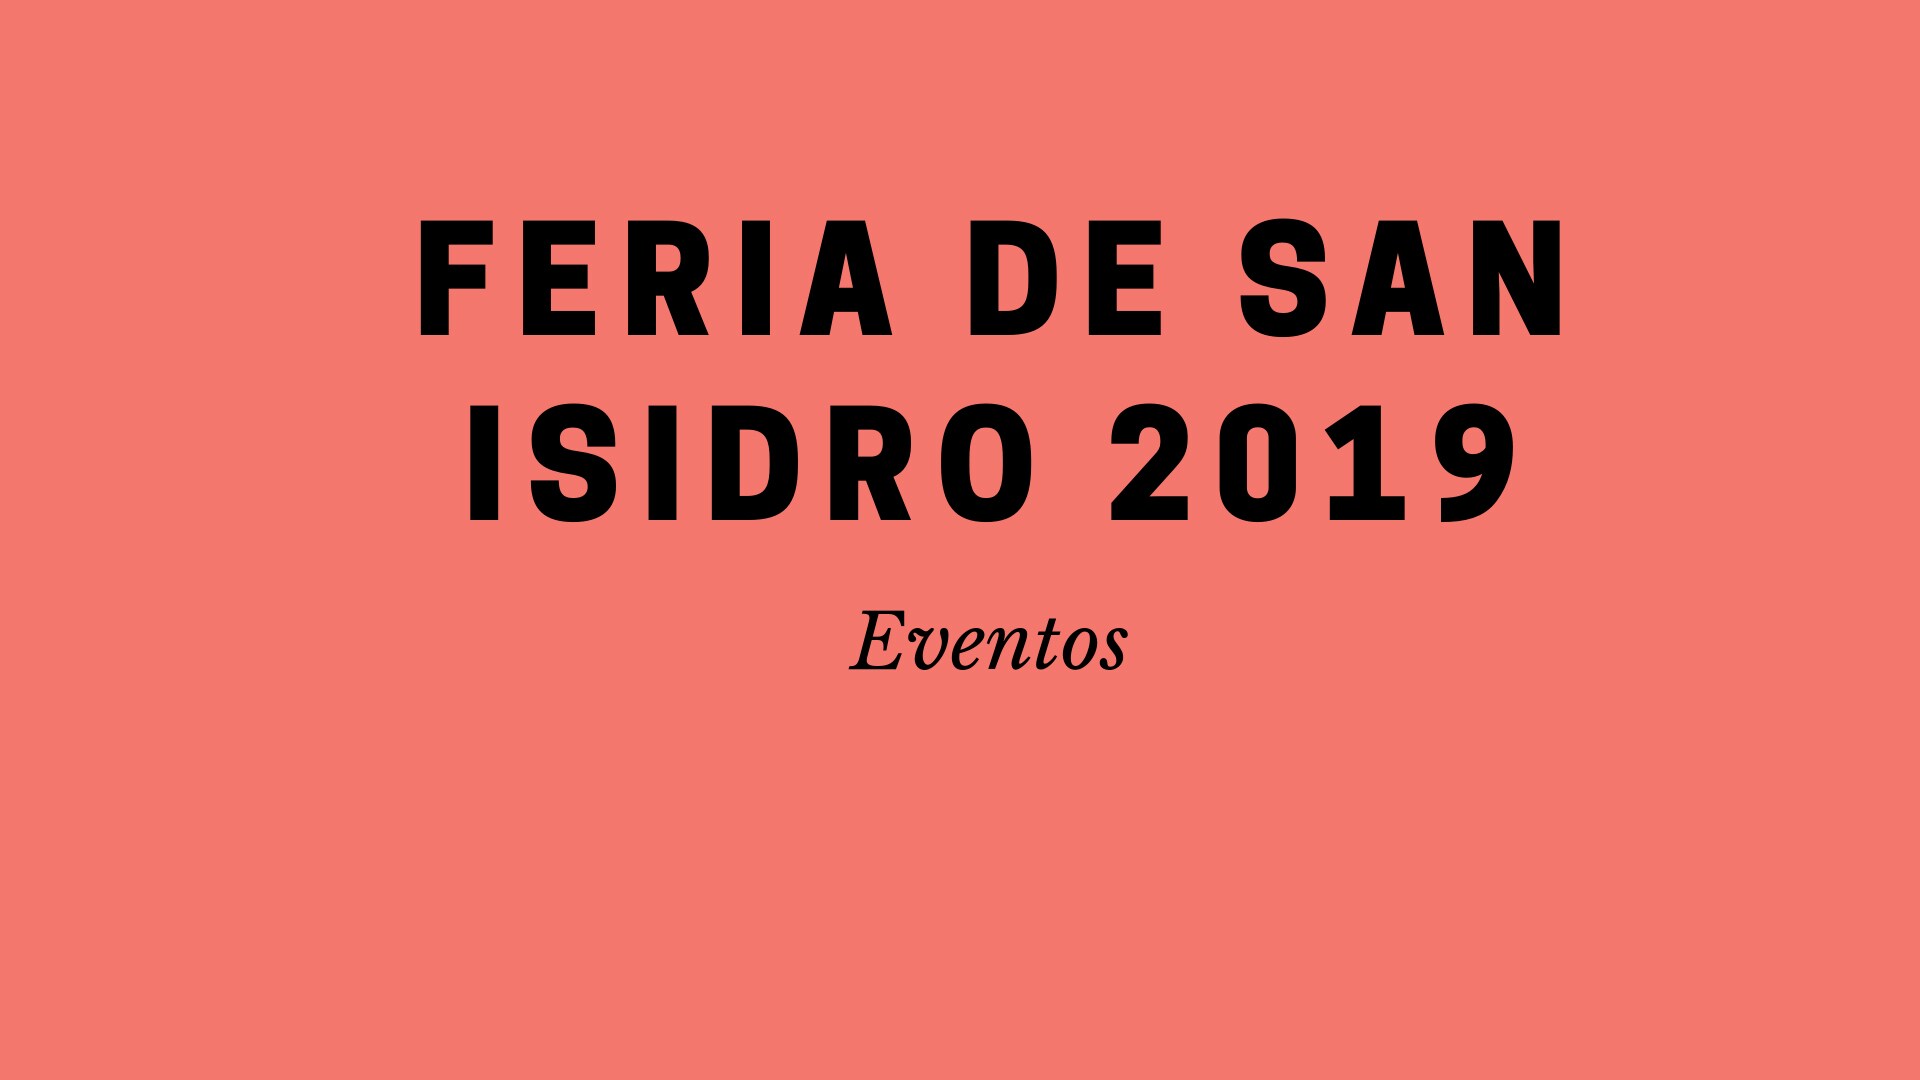 Feria de San Isidro 2019